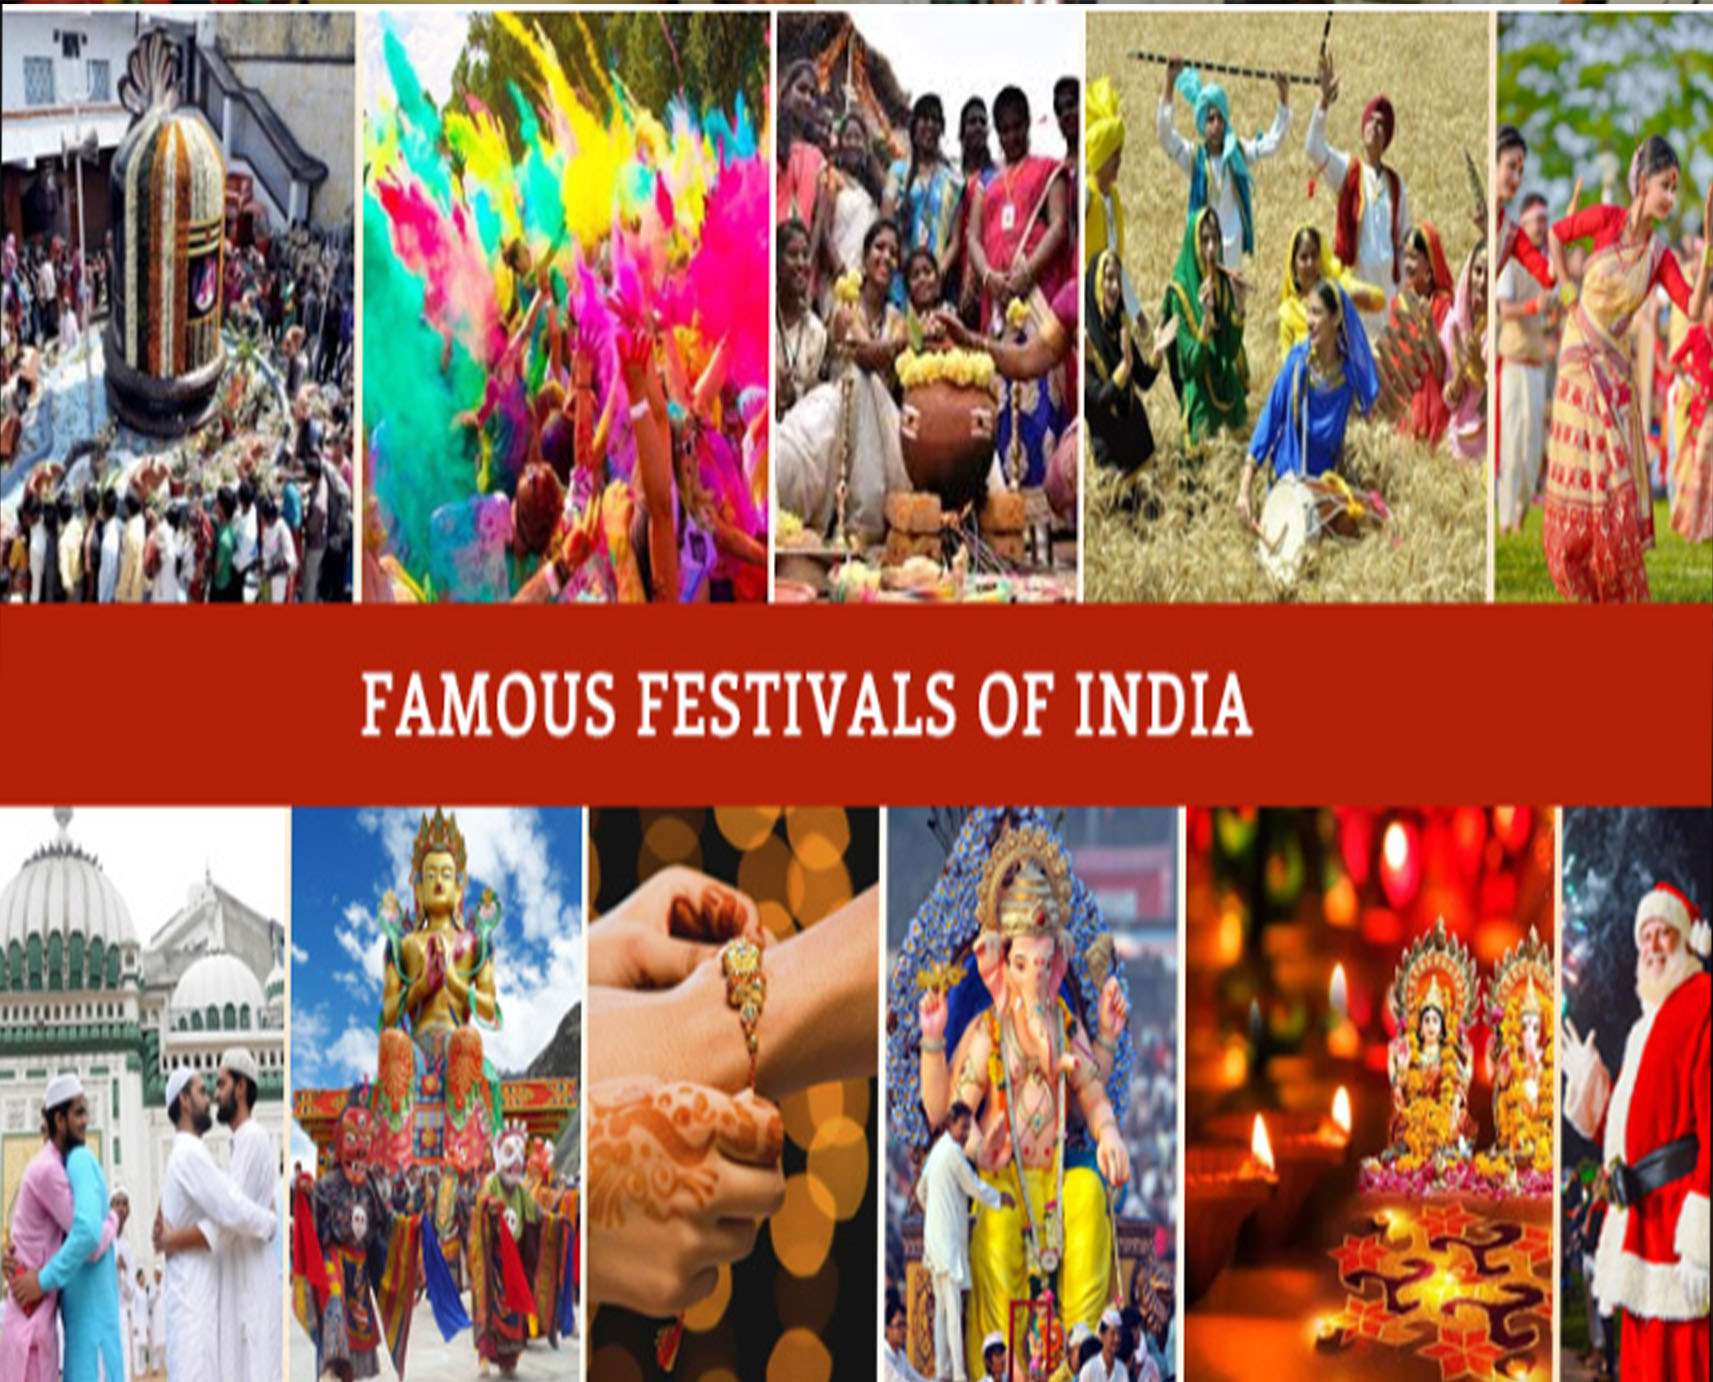 Cultural & Religious Festivals in India